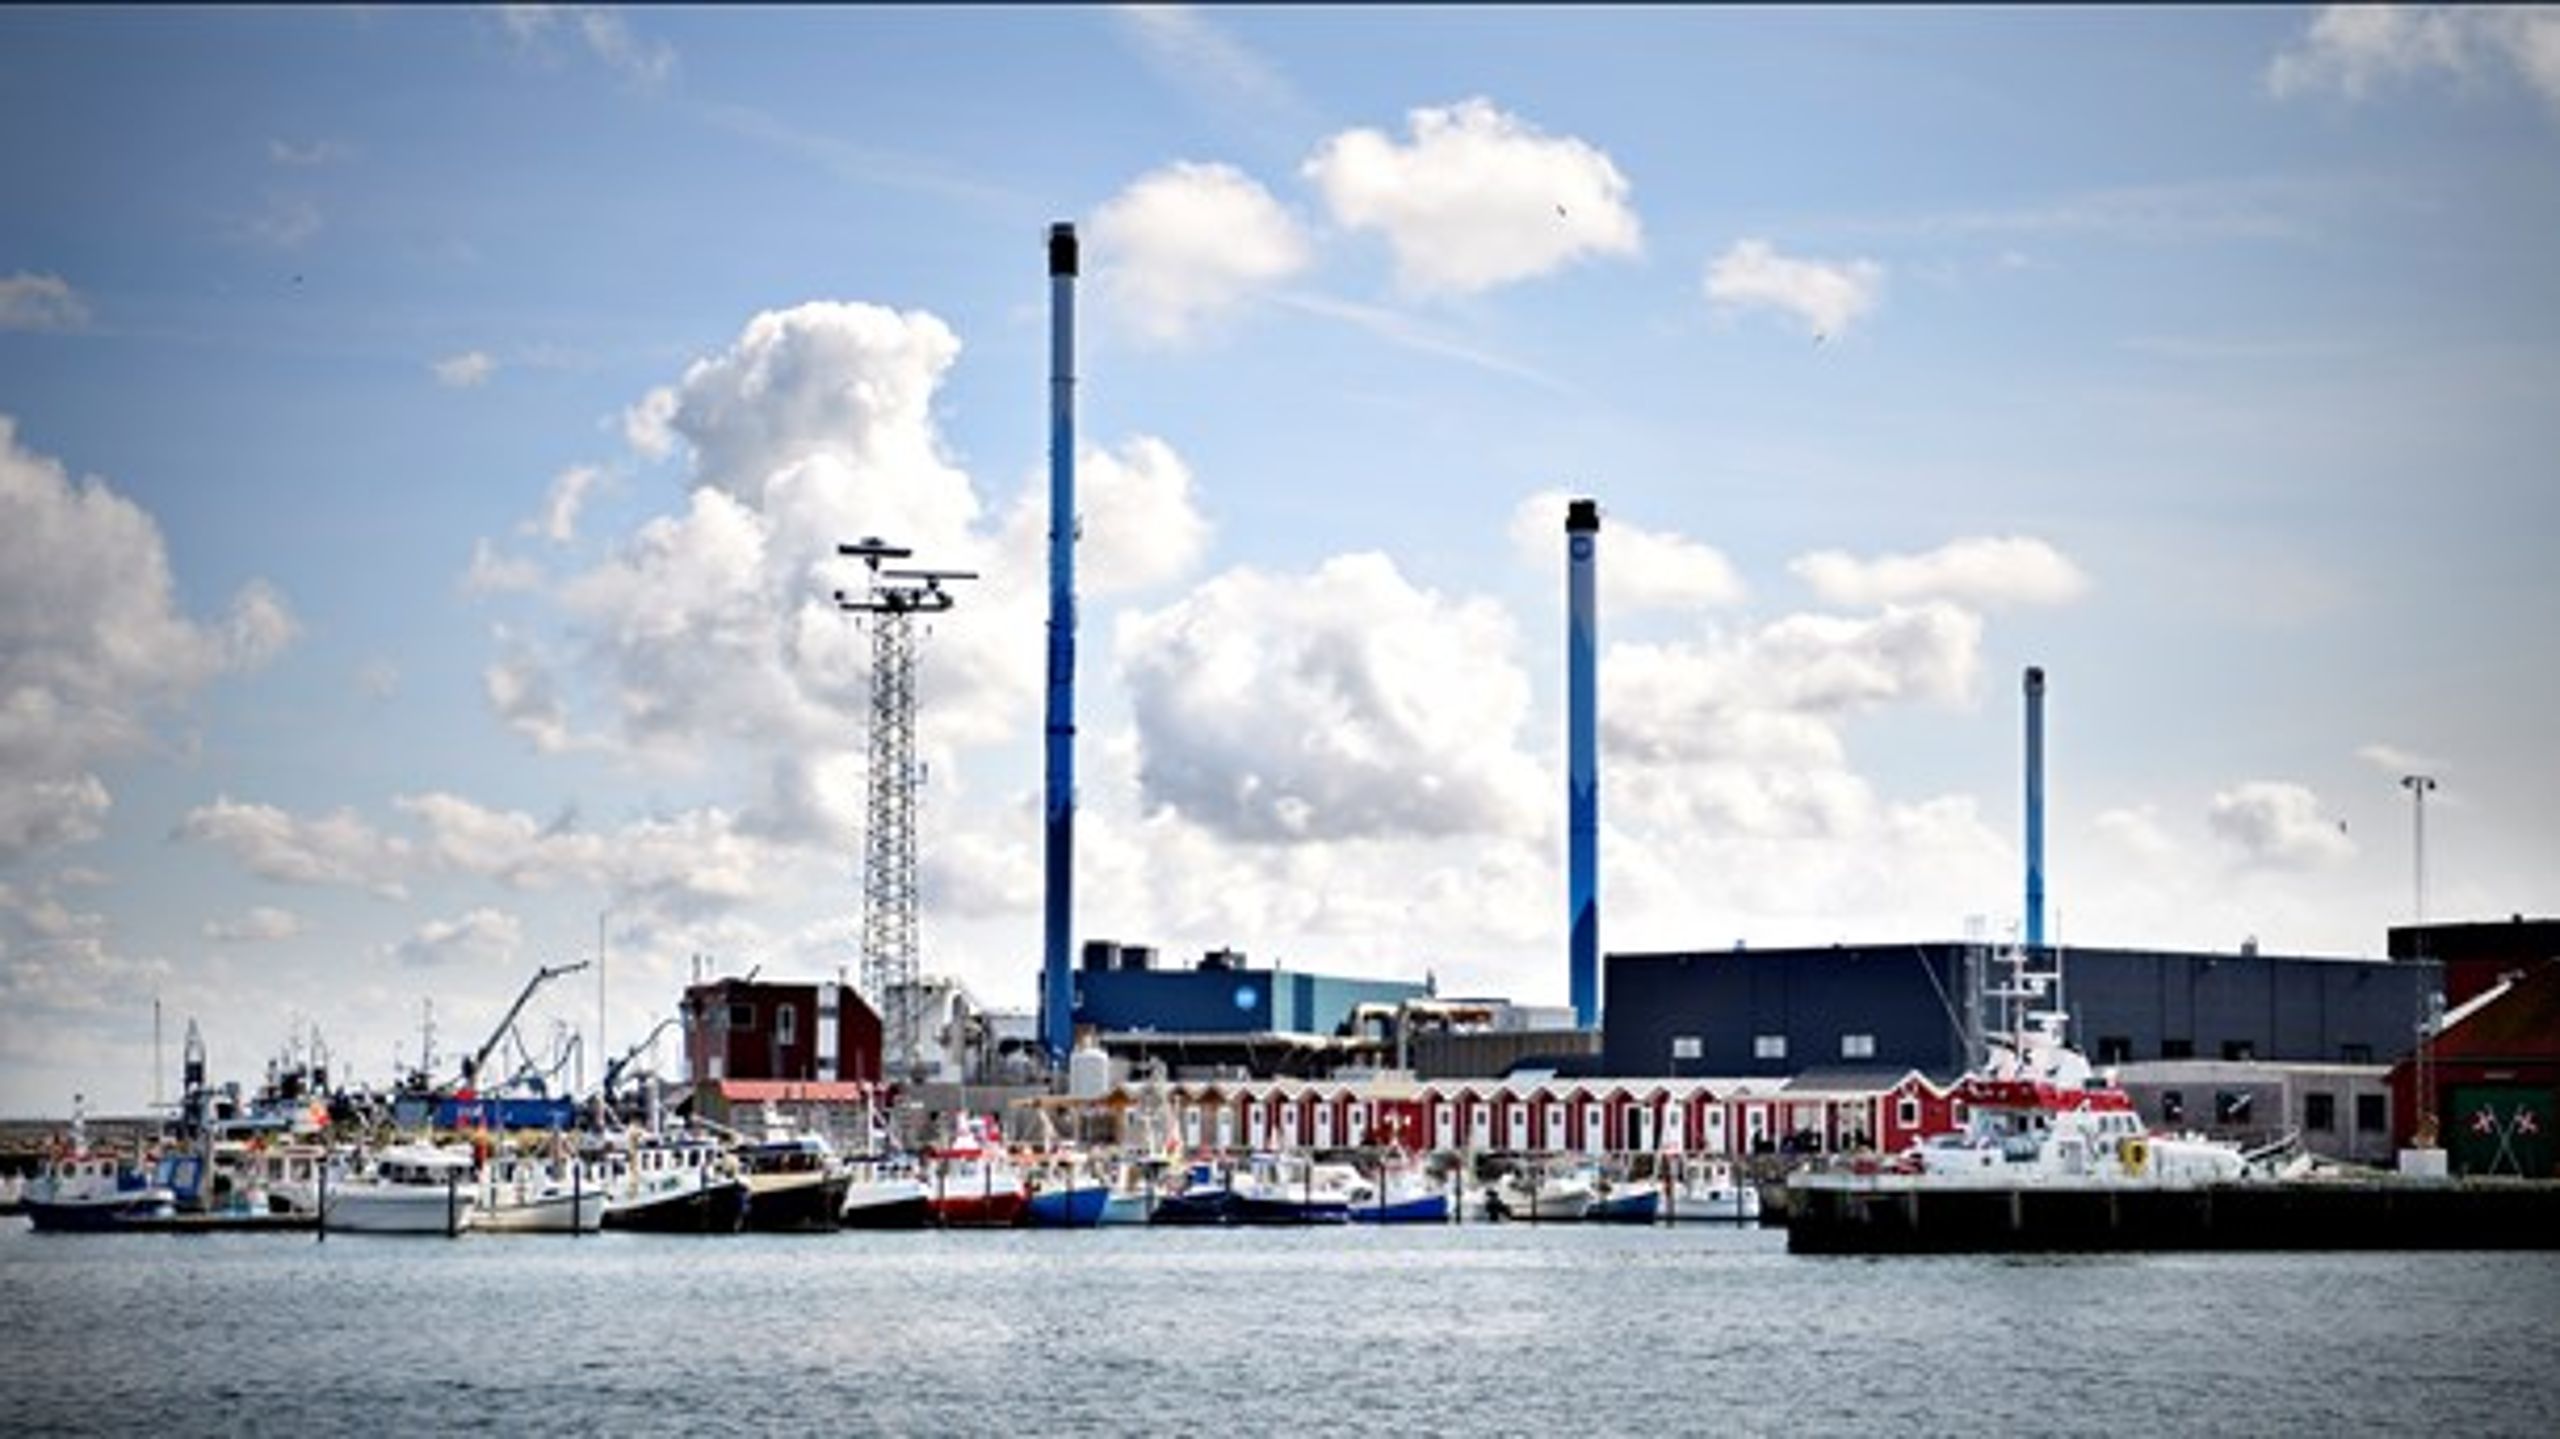 Tidligere er boliger blevet opført i de danske havne på bekostning af industrien, men fremover skal der være plads til begge.